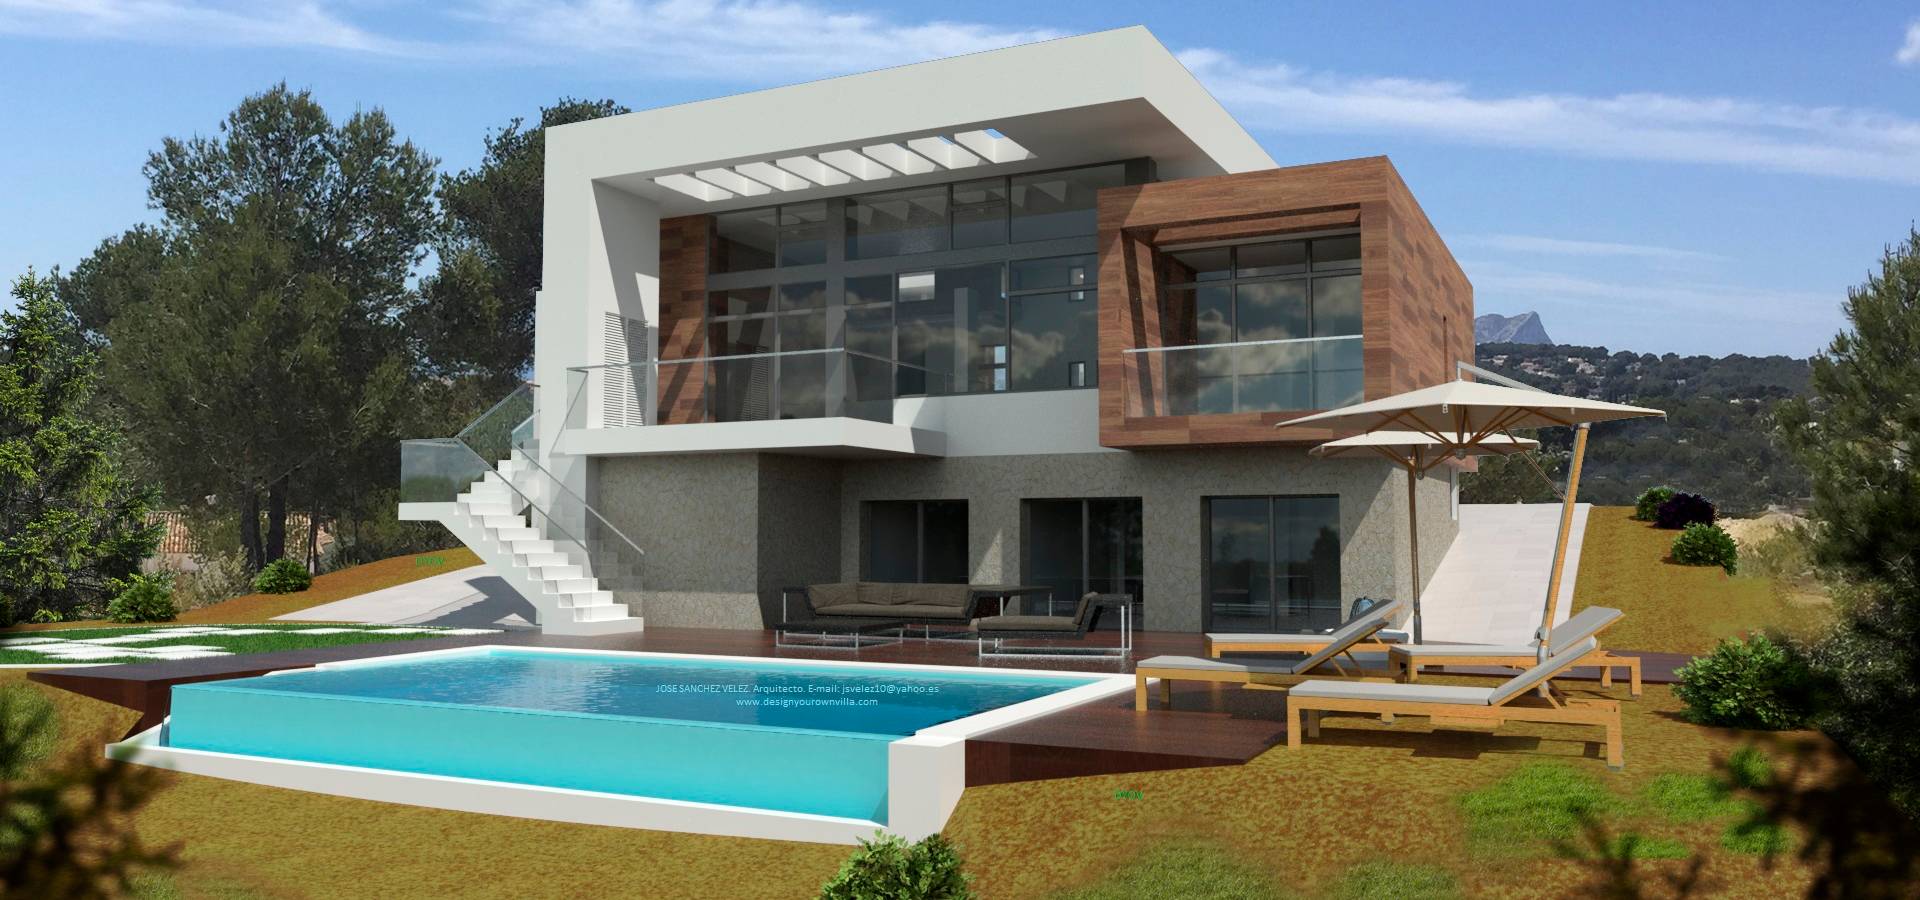 Arquitectura NATURAL, Mediterranean Passivhaus concept. 696.663.559 y 653.77.38.06